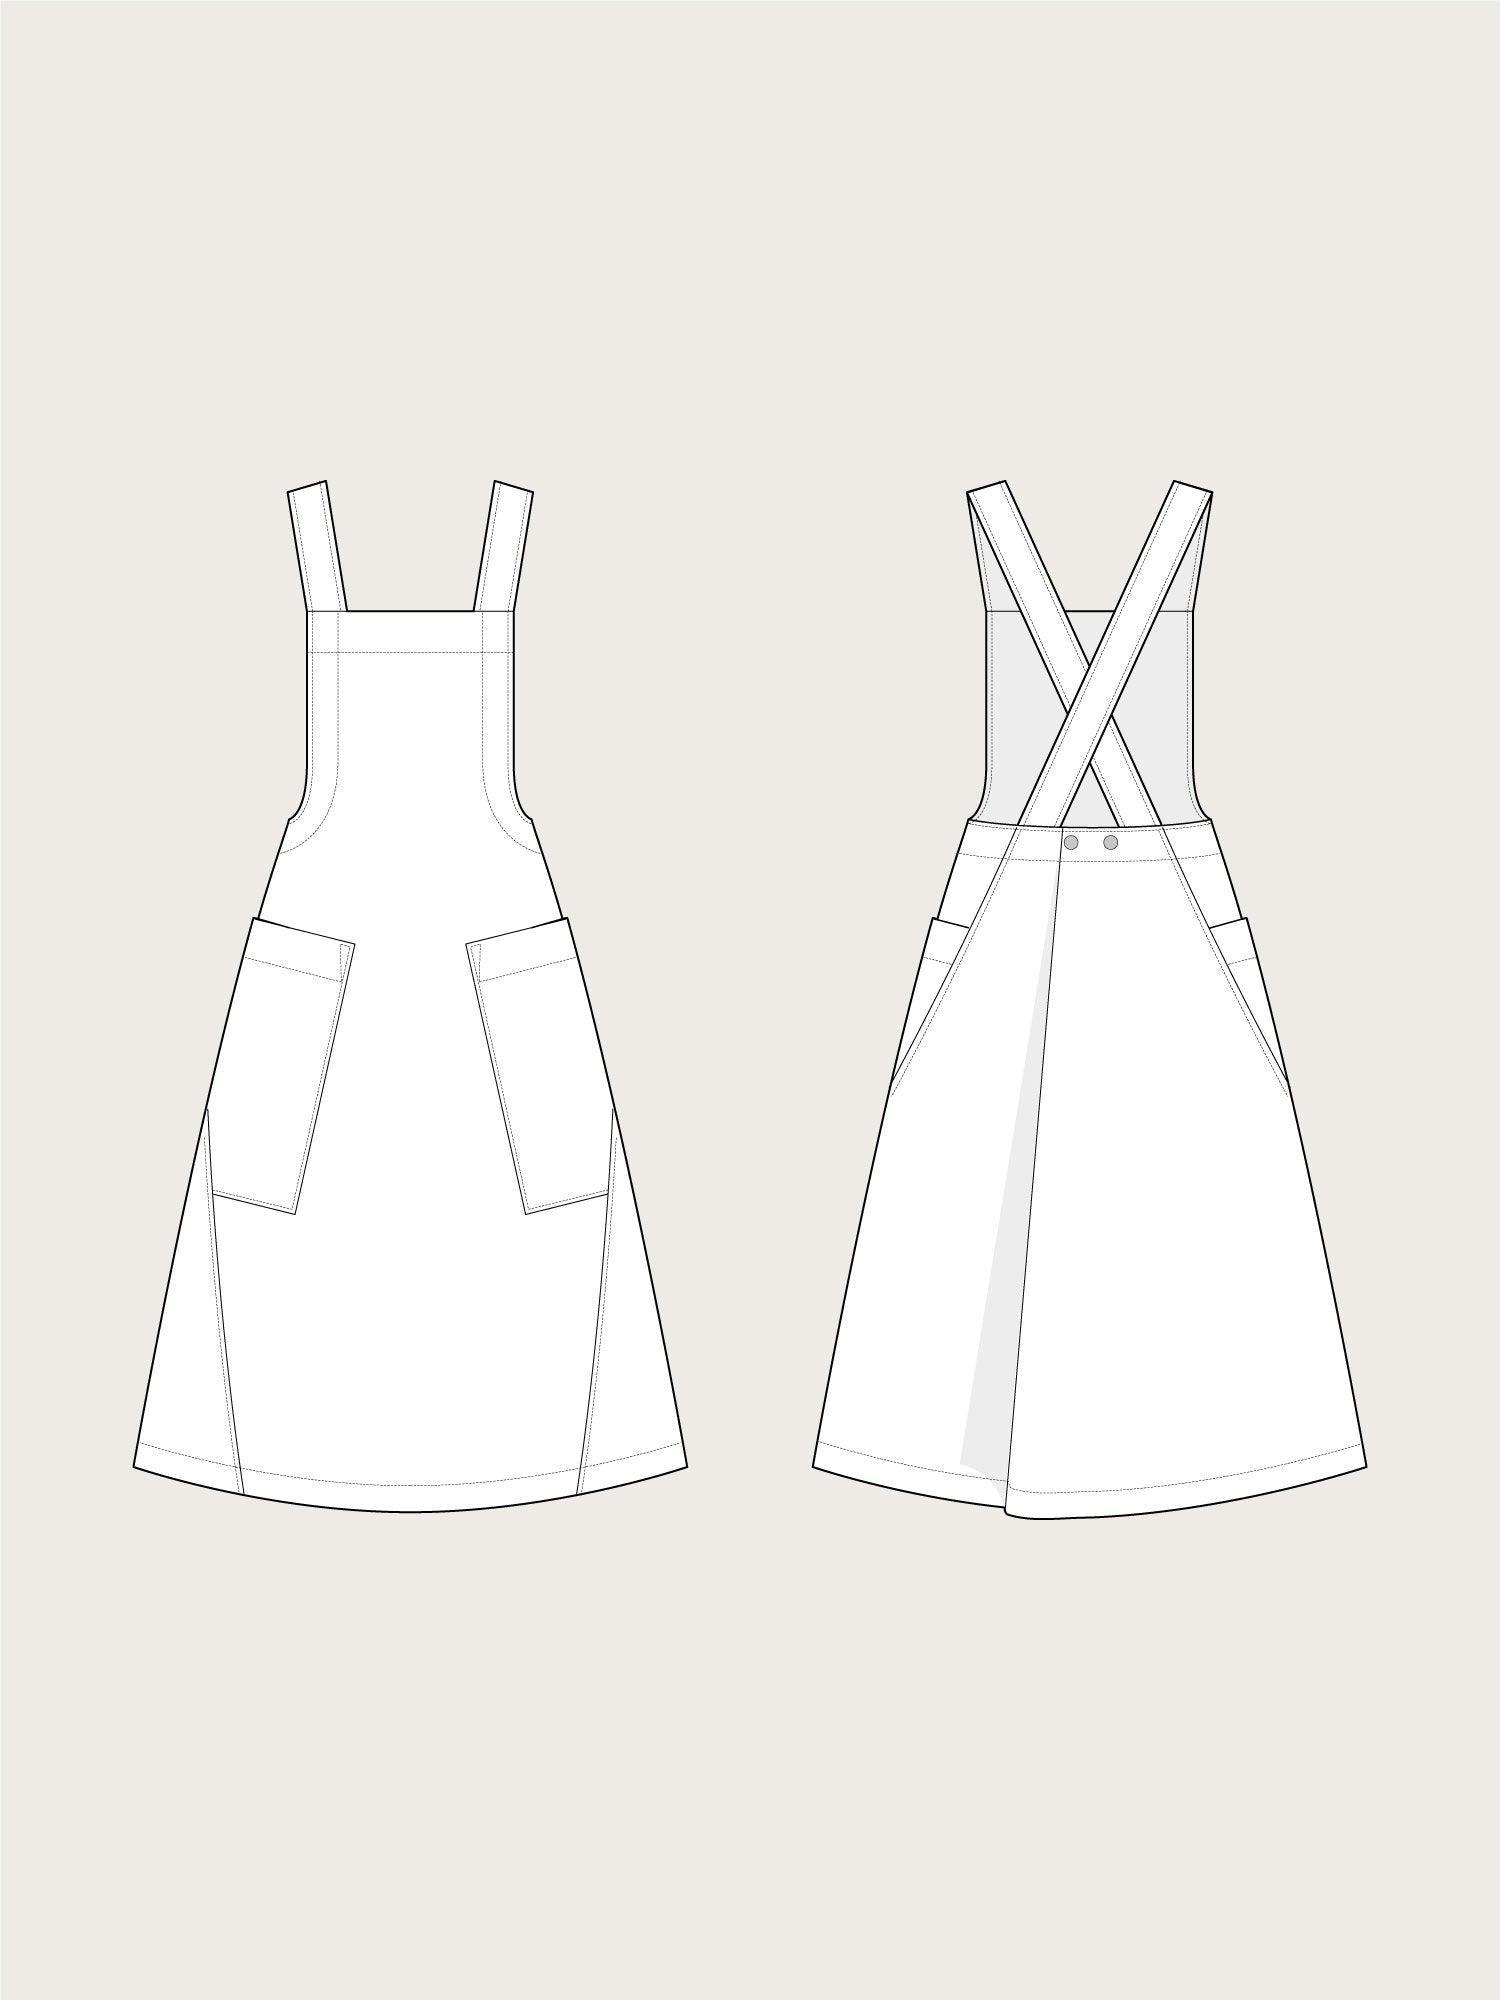 Apron dress pattern